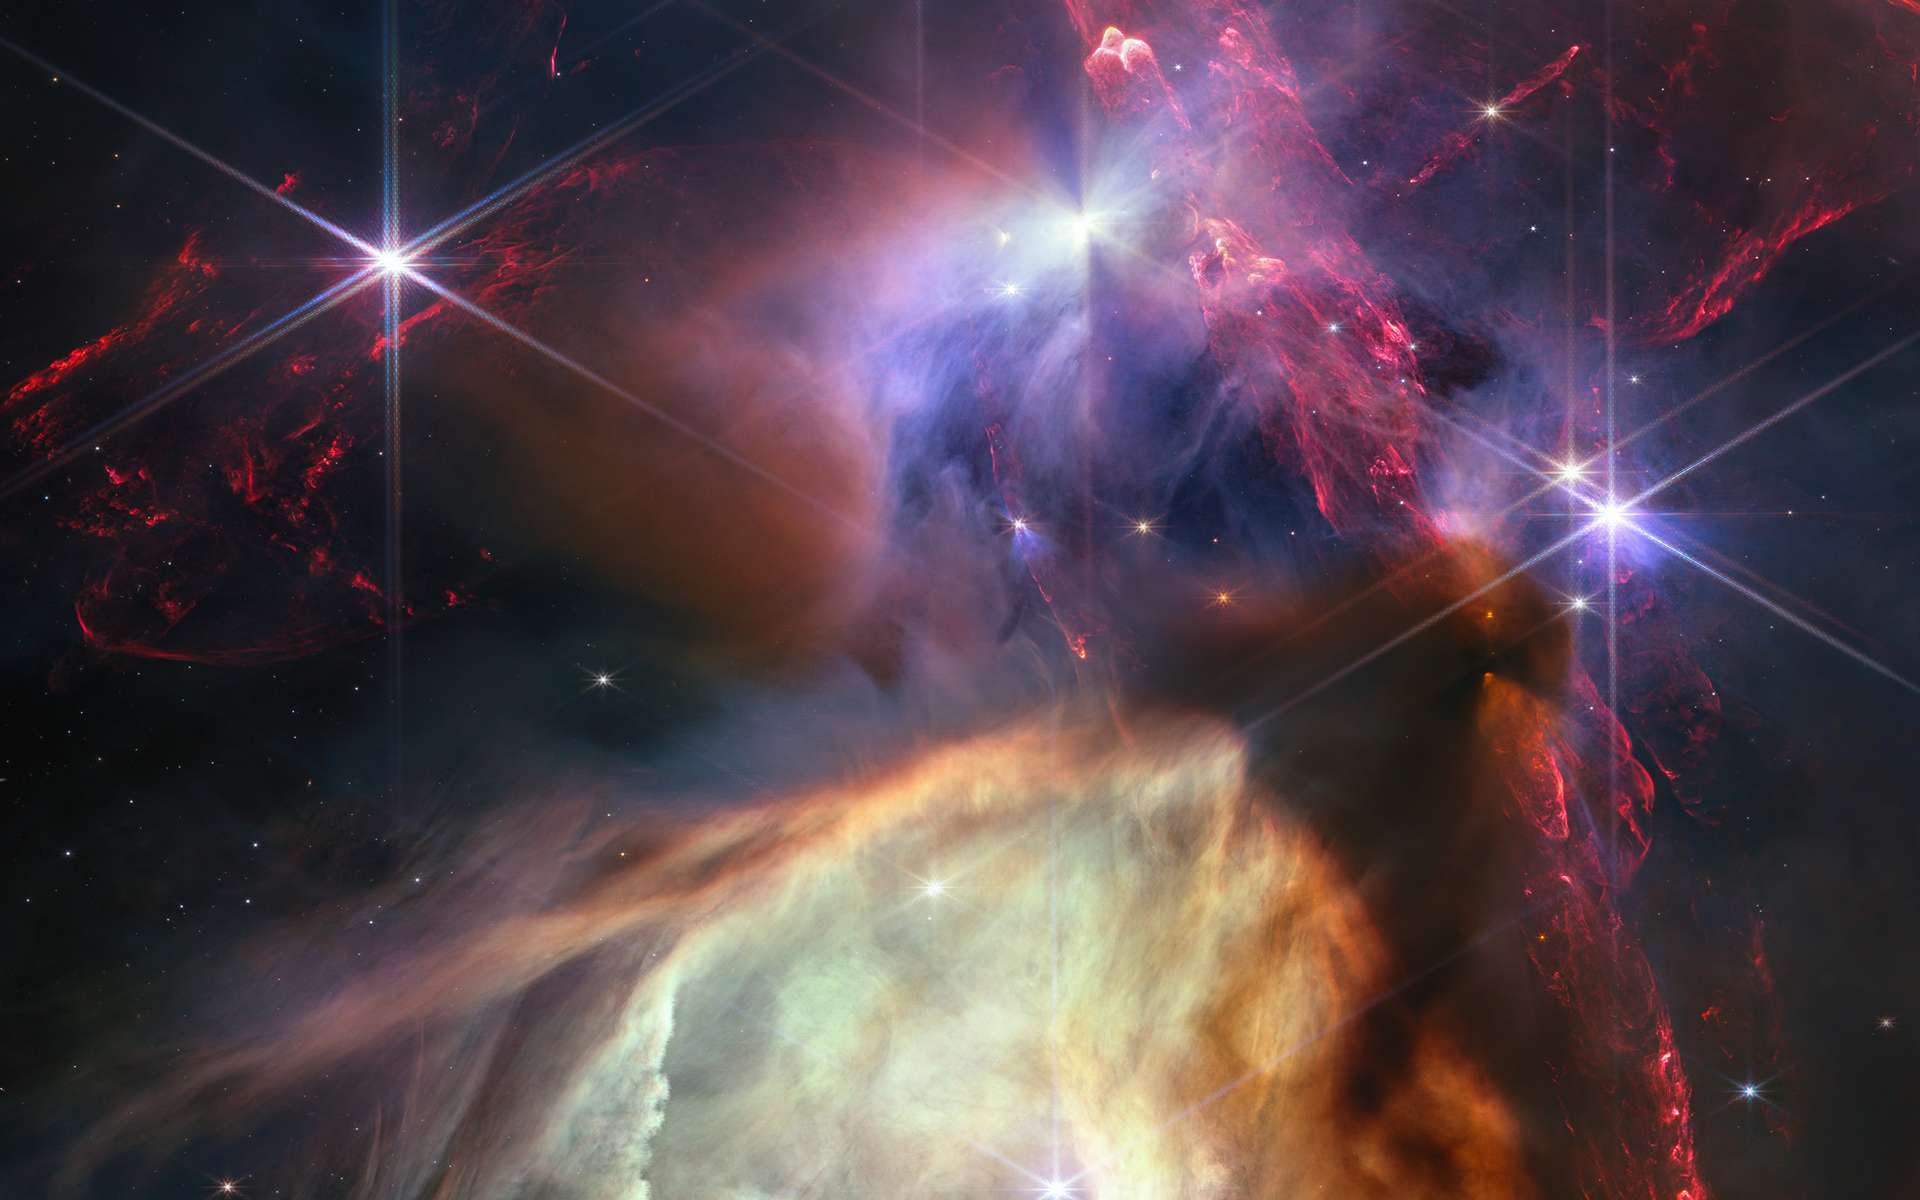 Le JWST célèbre sa première année dans l'espace avec cette image époustouflante de notre Univers